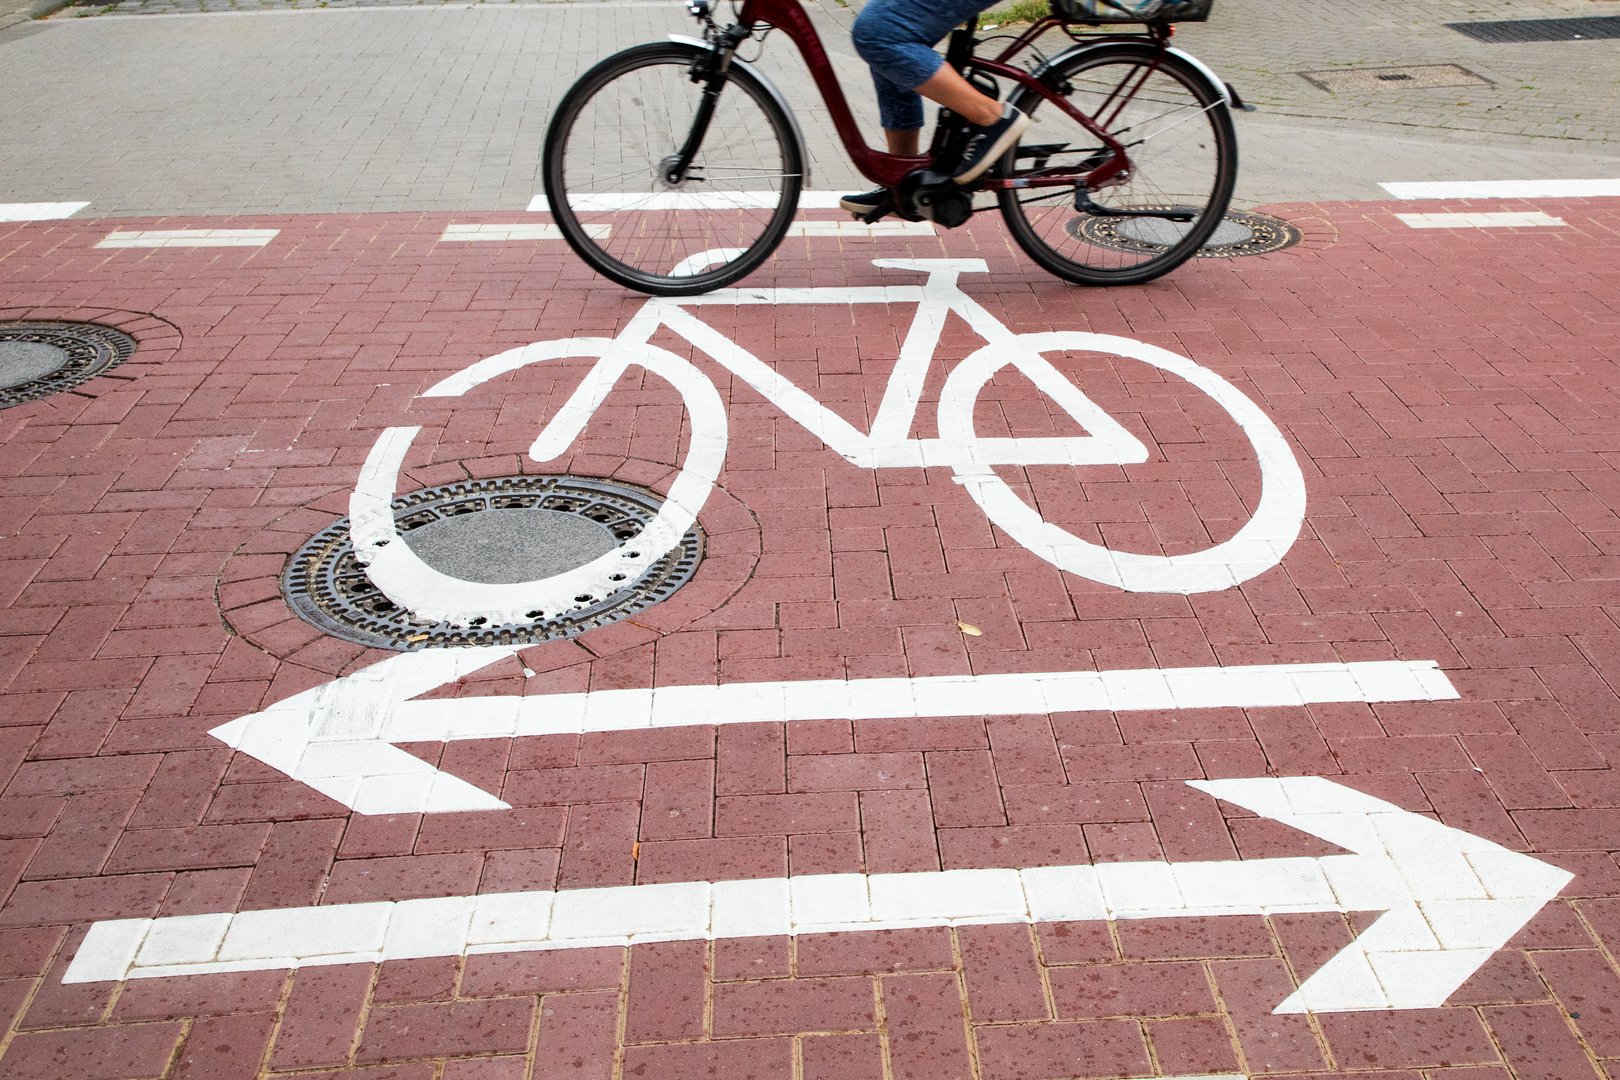 Das Fahrradpiktogramm auf dem Boden kennzeichnet die neue Fahrradstraße im Stadtteil Wüste.